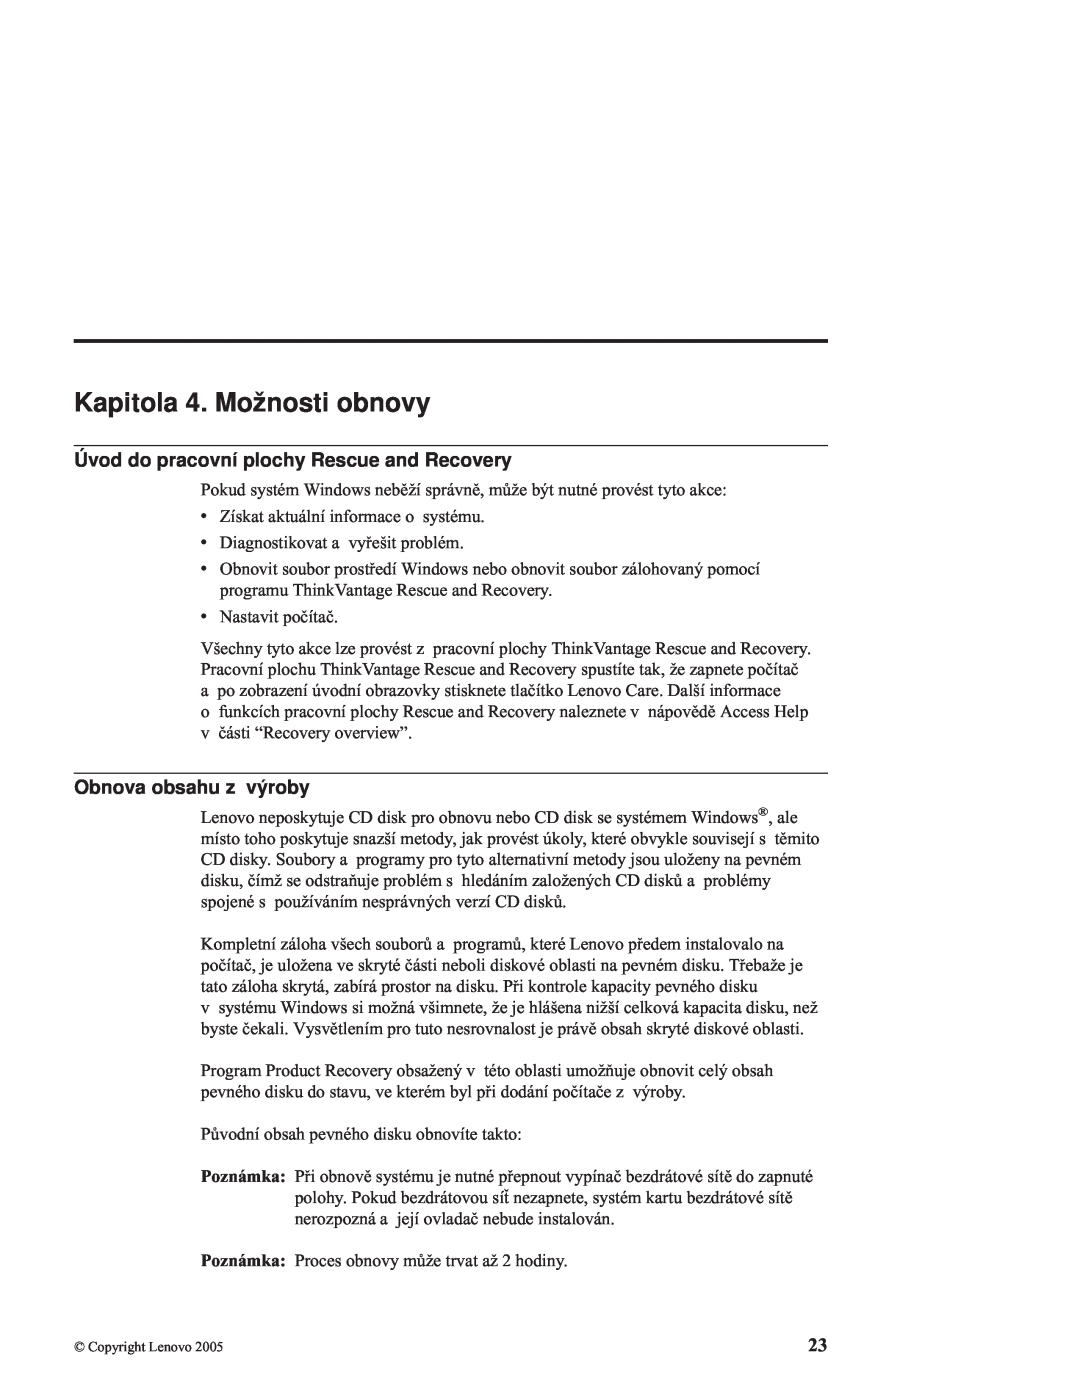 Lenovo C100 manual Kapitola 4. Možnosti obnovy, Úvod do pracovní plochy Rescue and Recovery, Obnova obsahu z výroby 